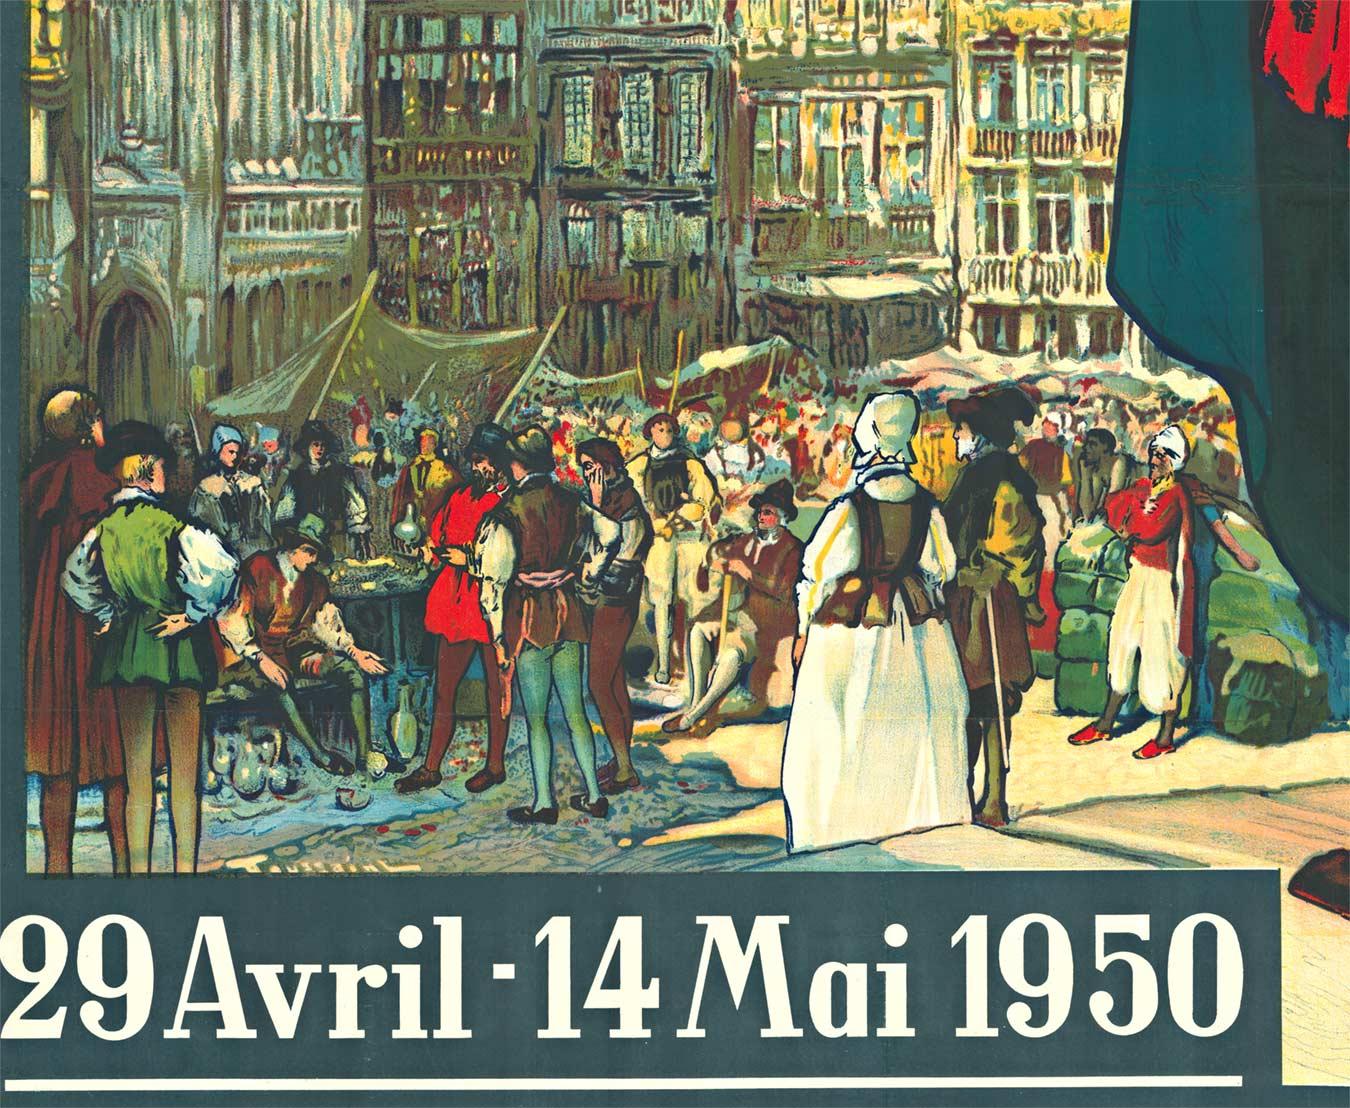 Original Bruxelles Foire Internationale vintage travel poster - Black Landscape Print by Fernand Toussaint